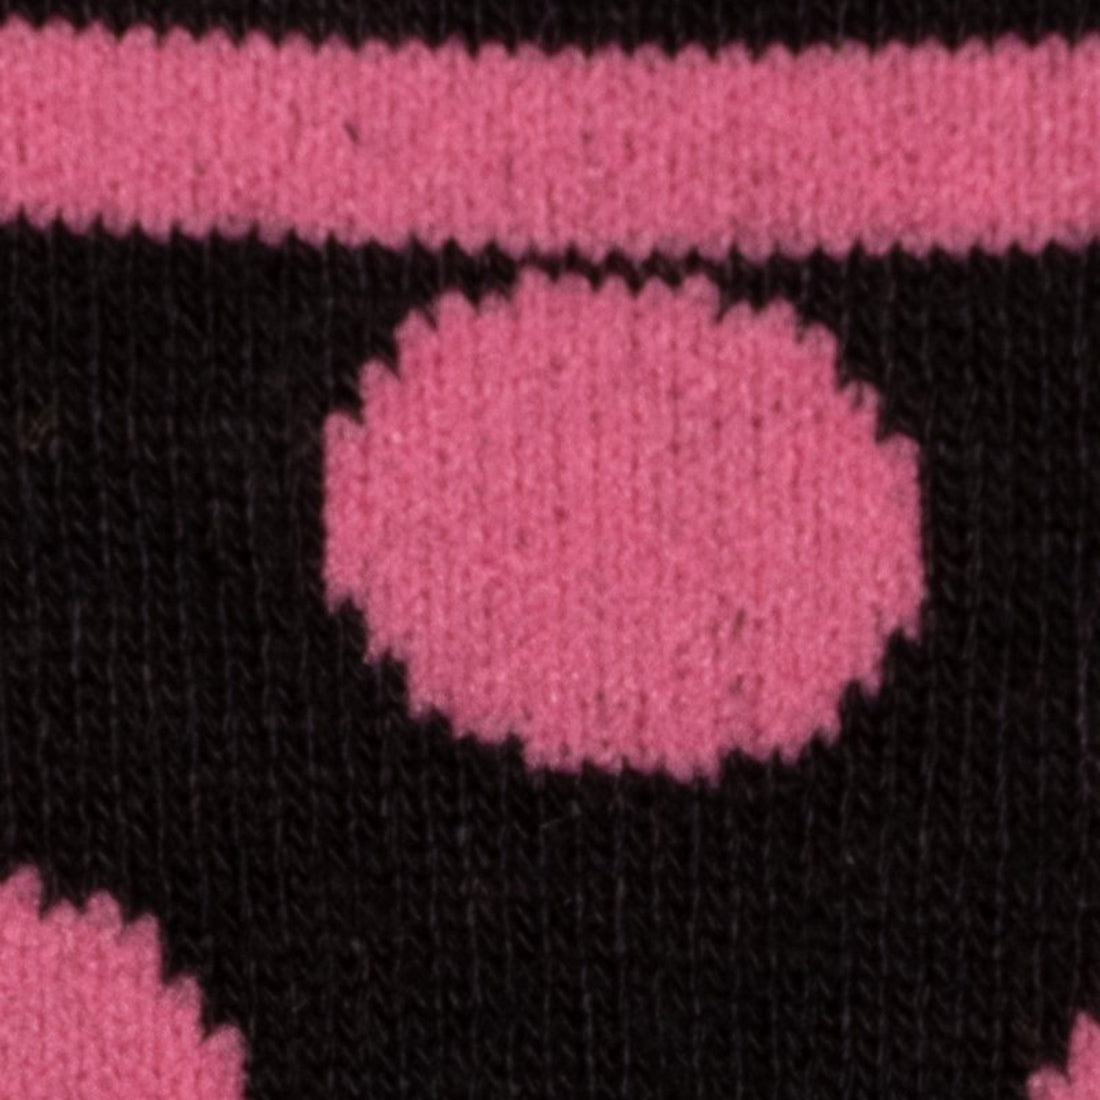 Black and Pink Polka Dot Bamboo Socks